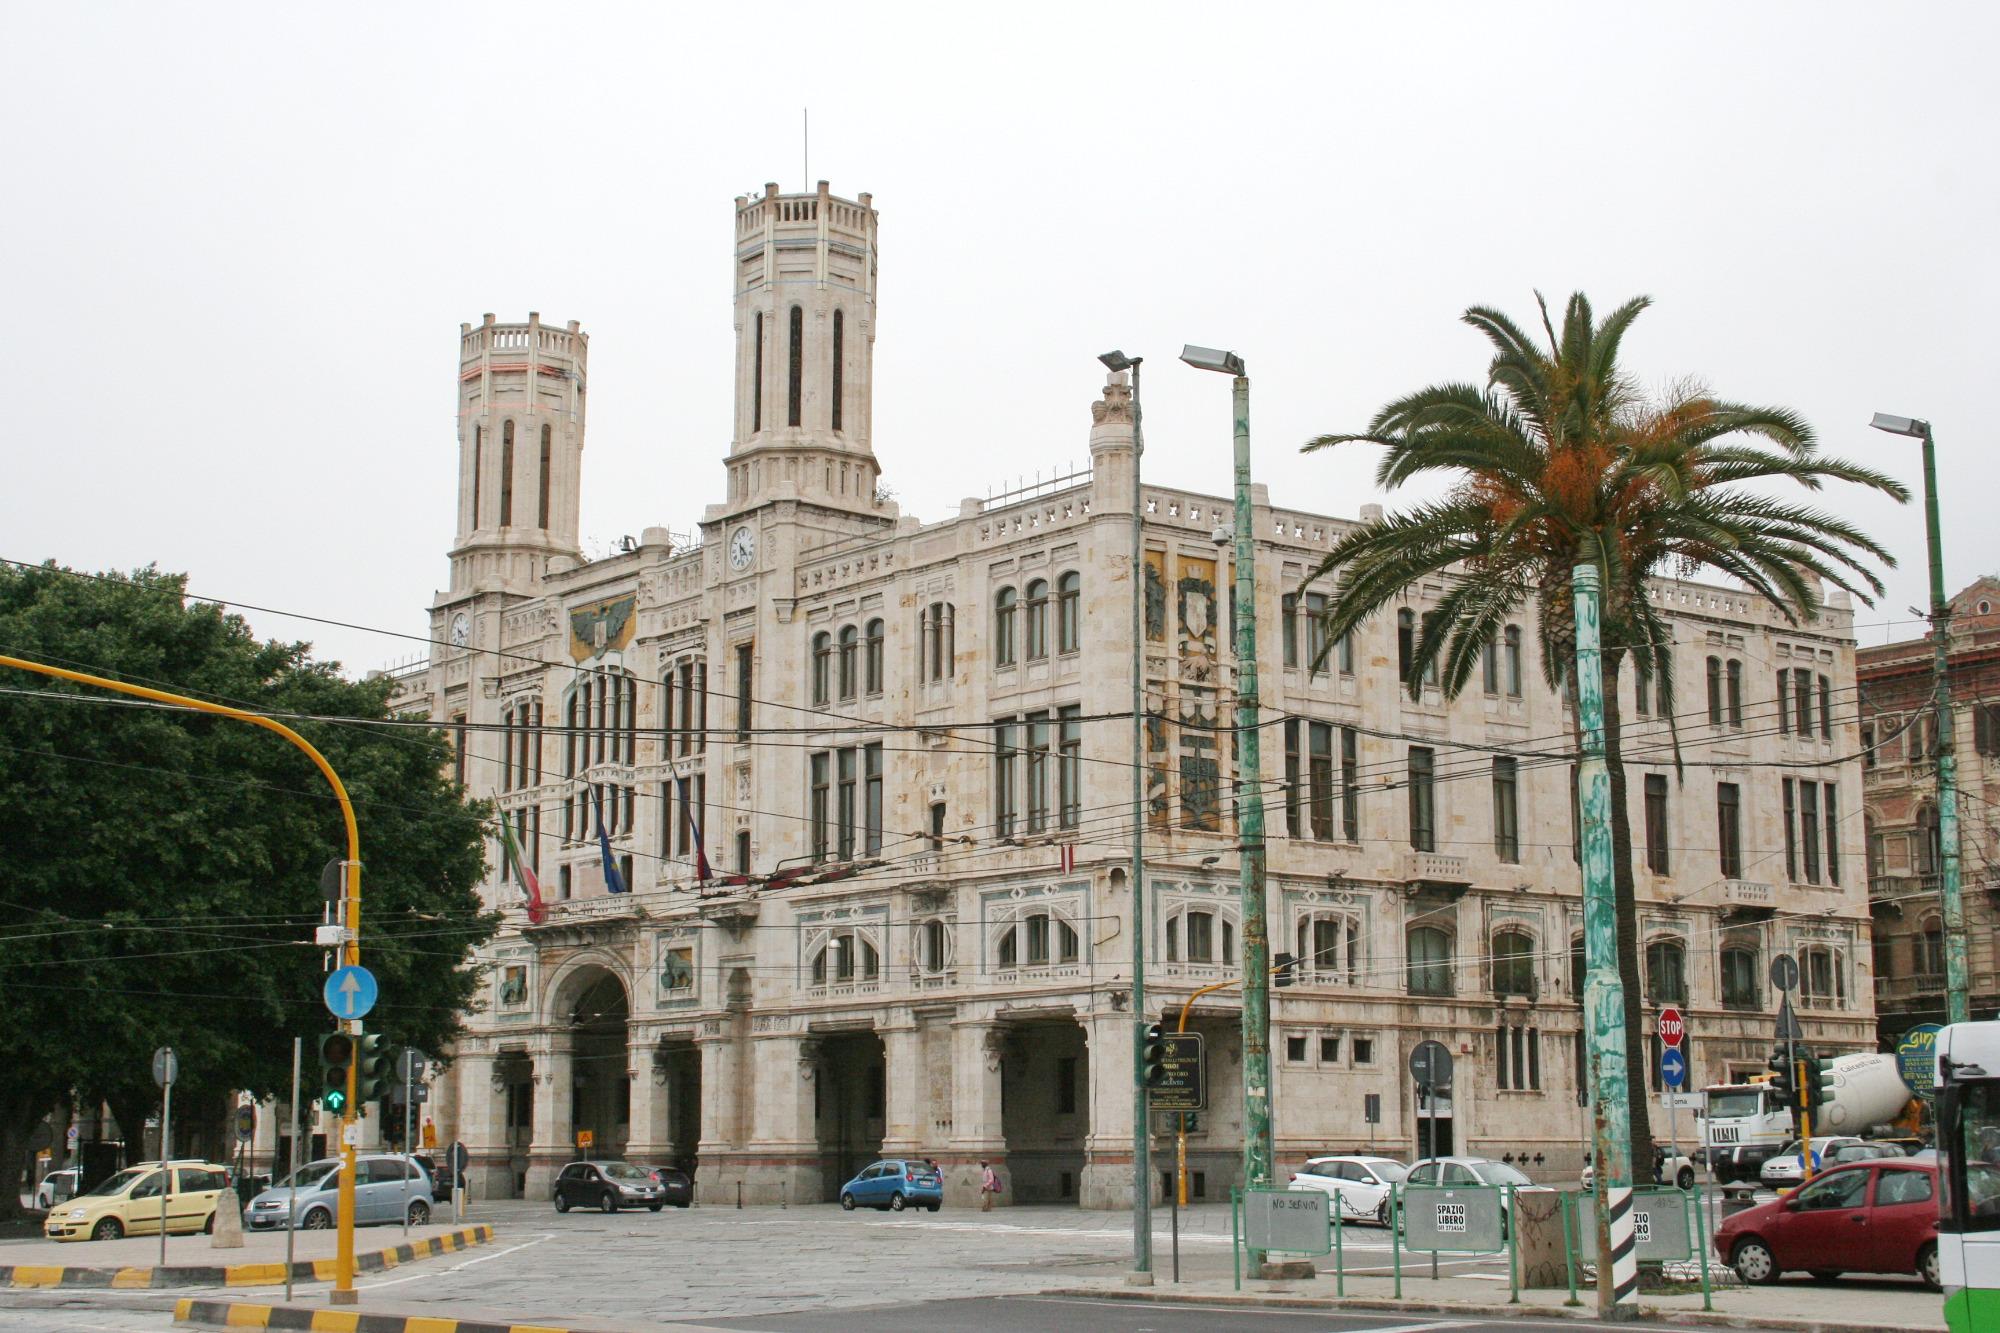 Palazzo Civico